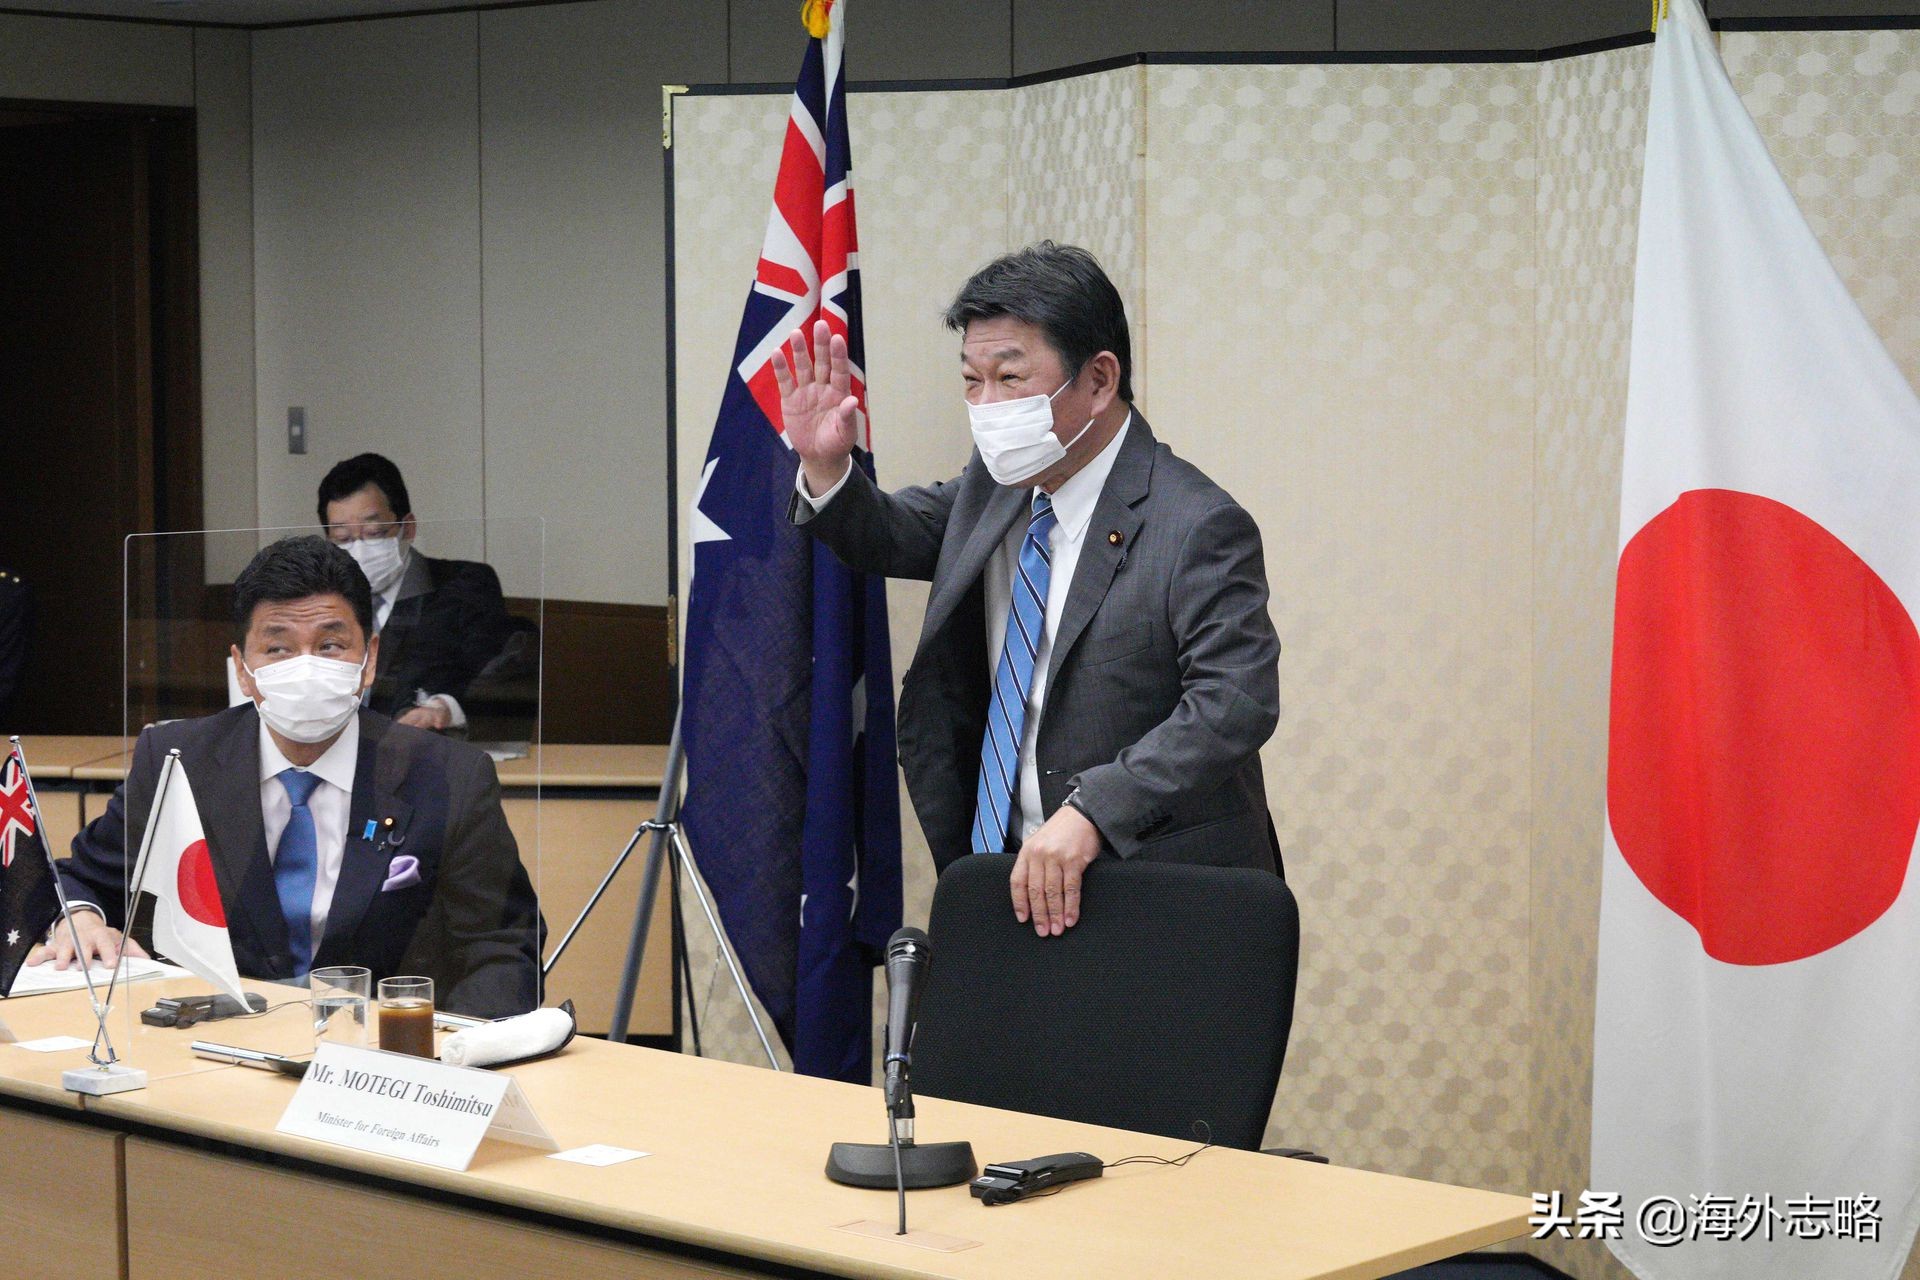 日本首相把台灣省稱為“國家”，日澳軍事結盟，事態正在惡化？